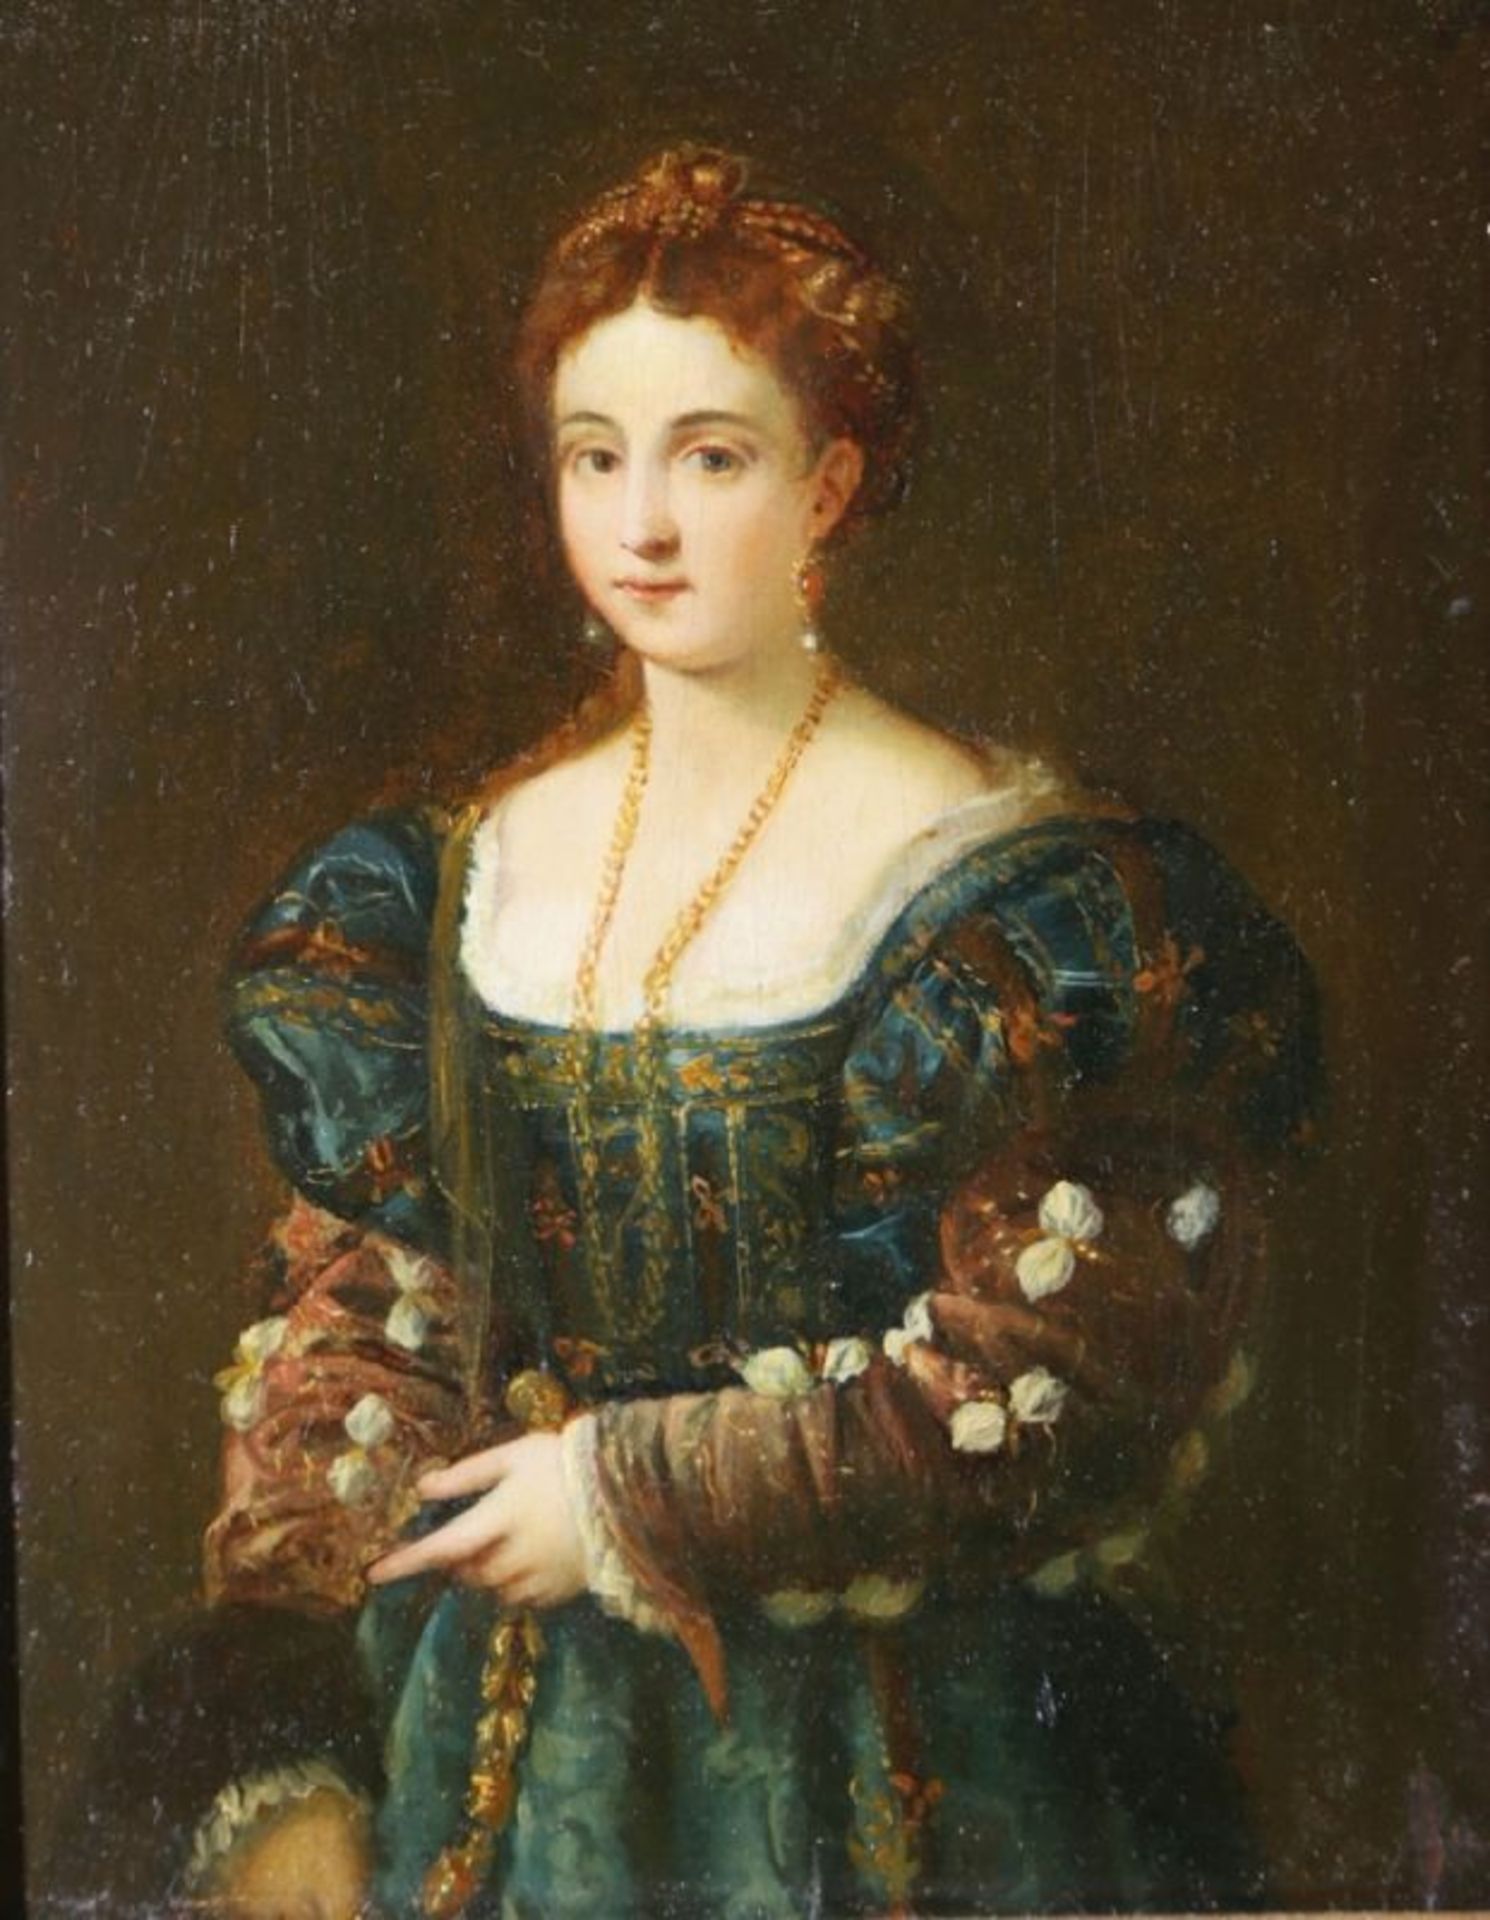 Anonymer Maler, 2. Hälfte 19. Jh. "Damenportrait", Öl/Holz, 23 x 18 cm